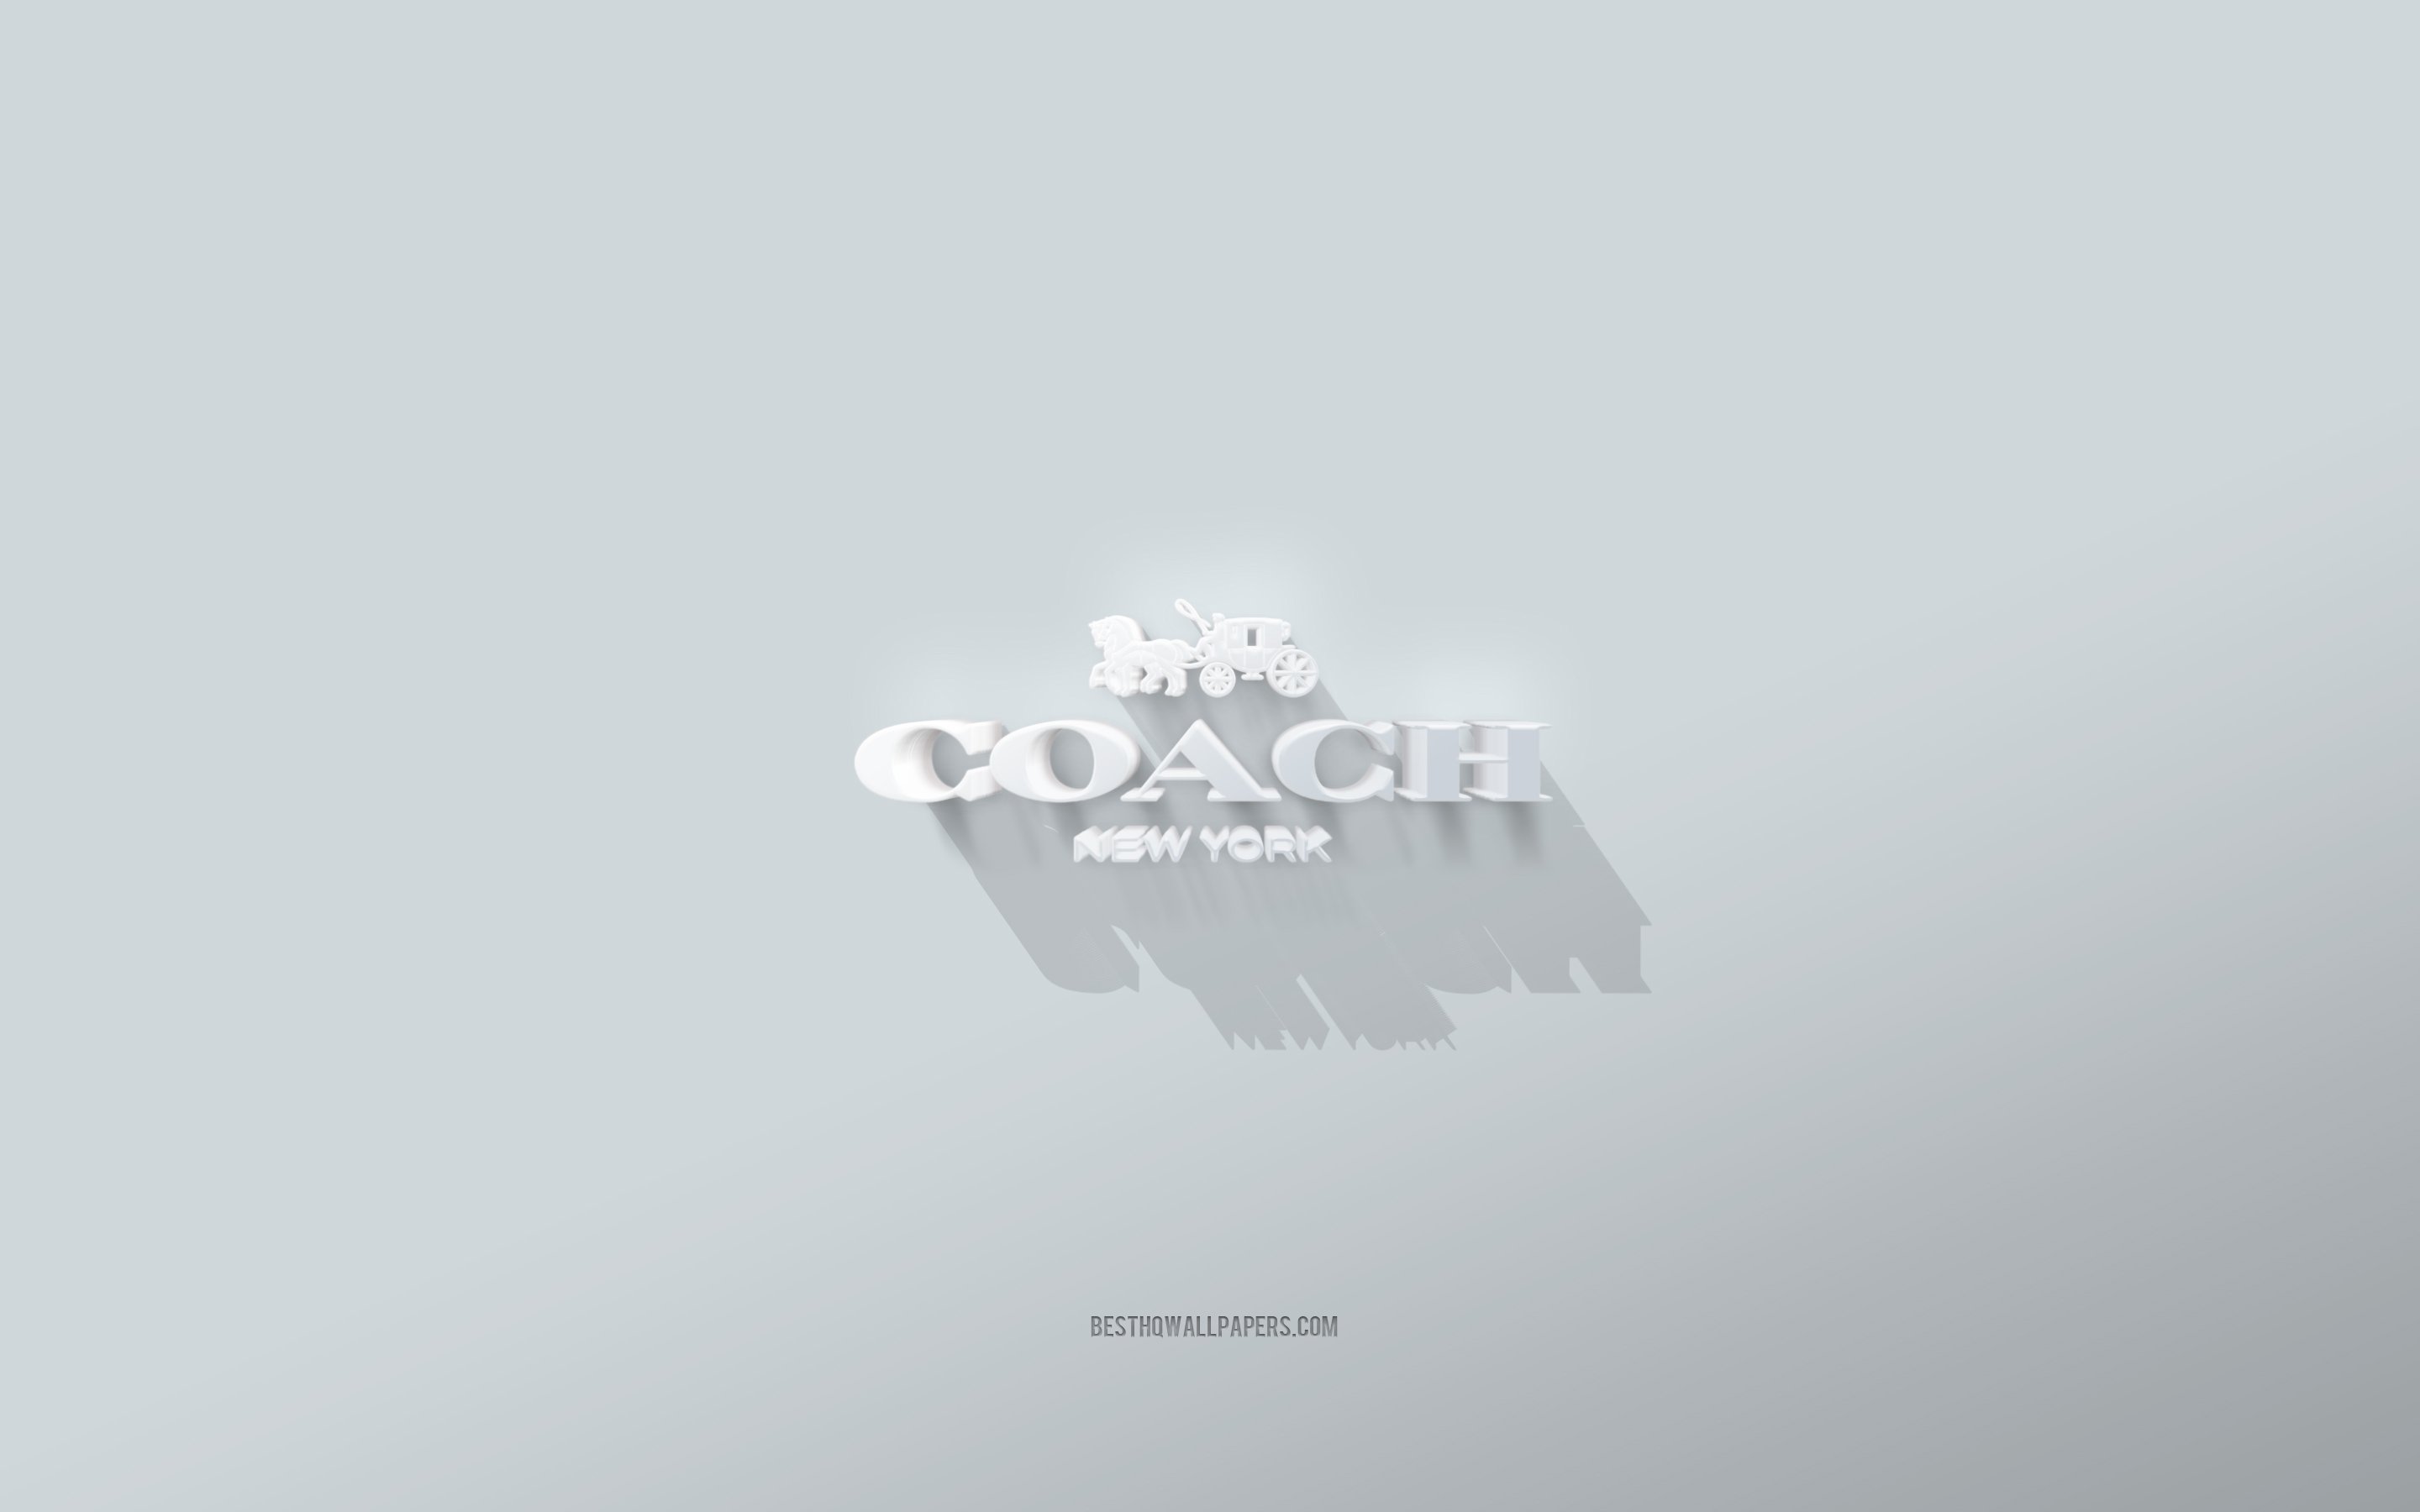 ダウンロード画像 コーチのロゴ 白背景 コーチの3dロゴ 3dアート コーチ 3dコーチエンブレム 画面の解像度 x1800 壁紙 デスクトップ上